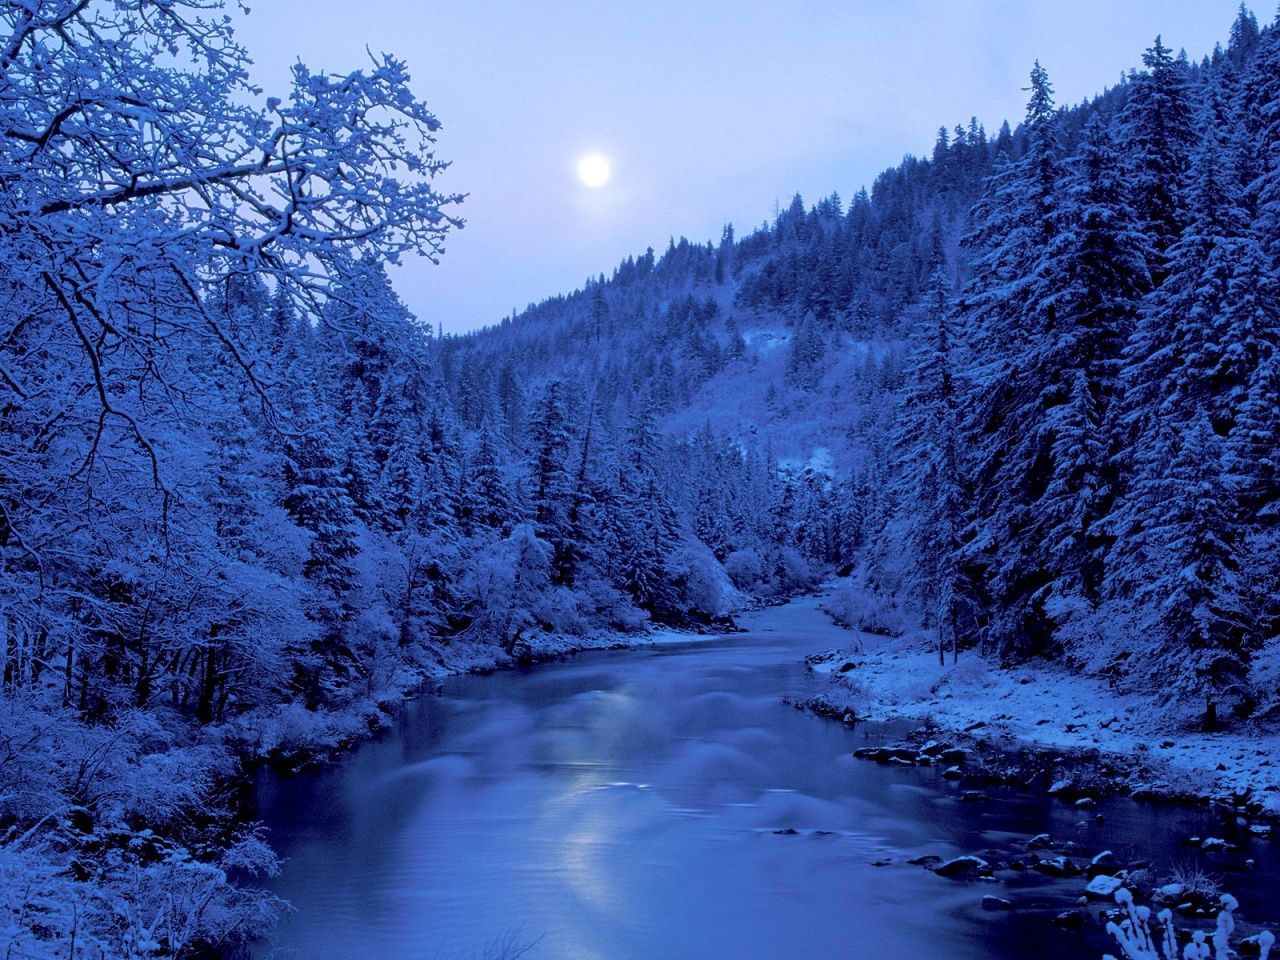 frozen-river